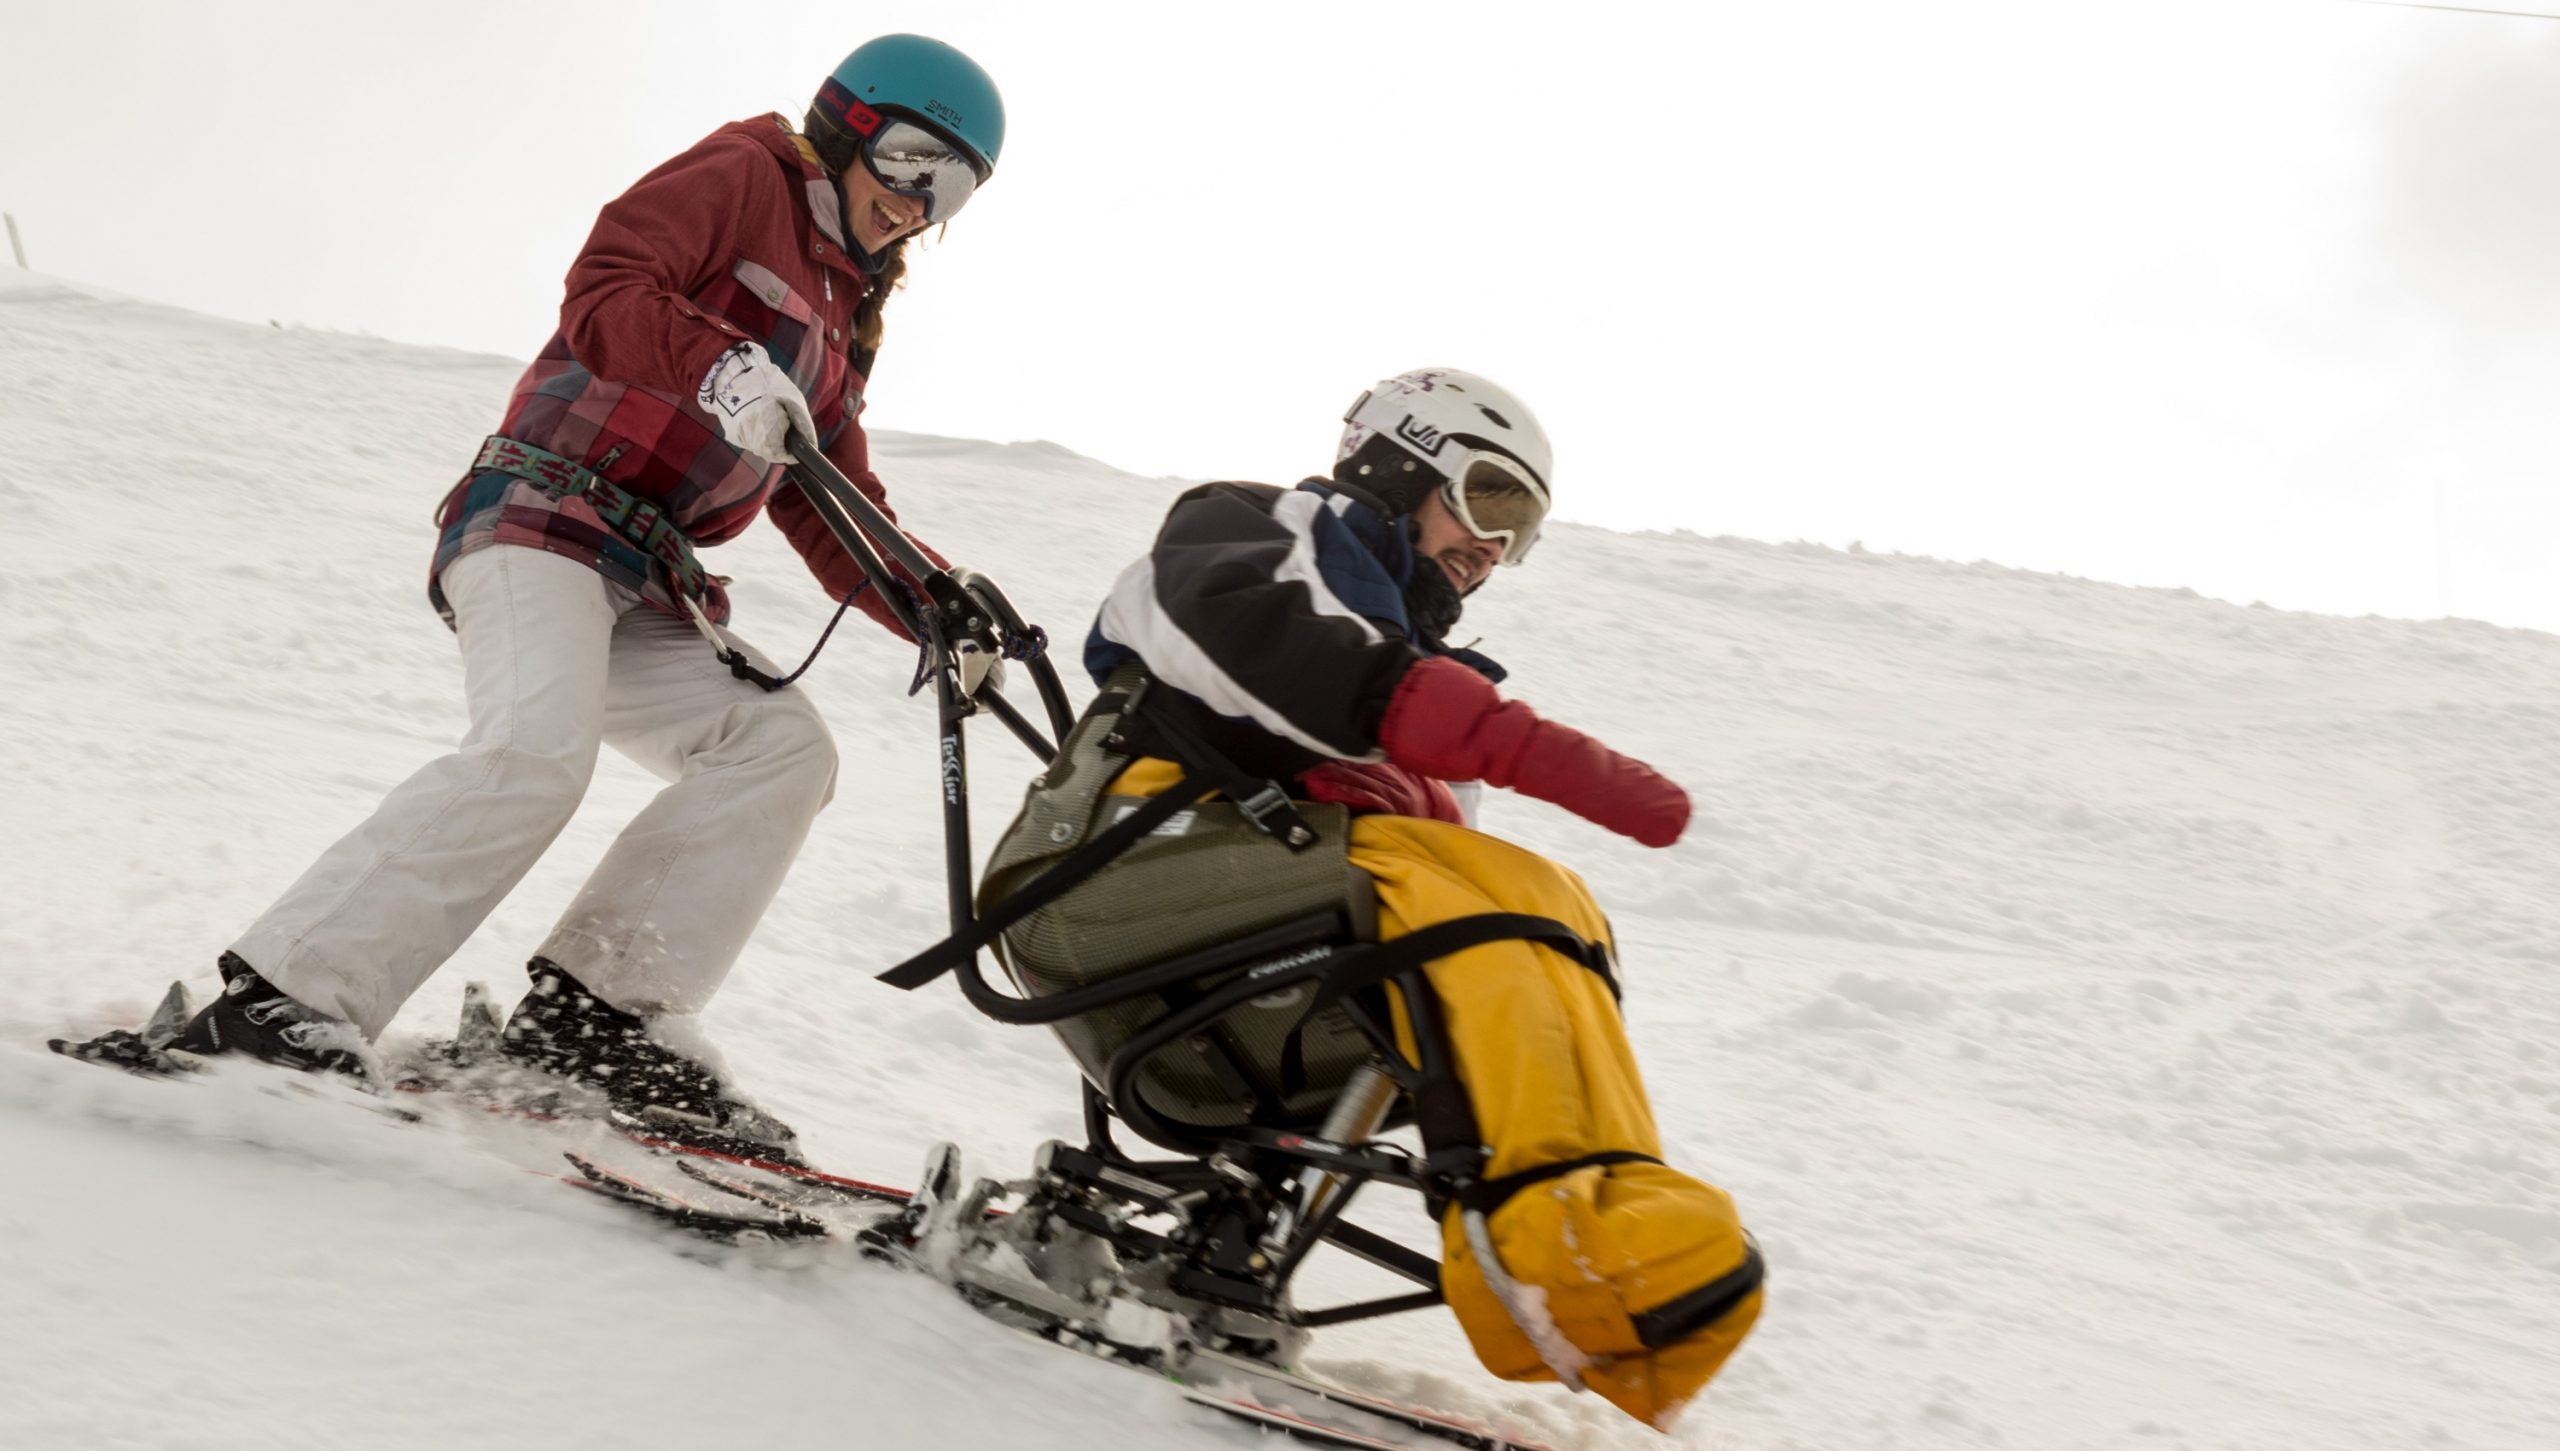 le fauteuil ski et le pilote formenr un beau duo